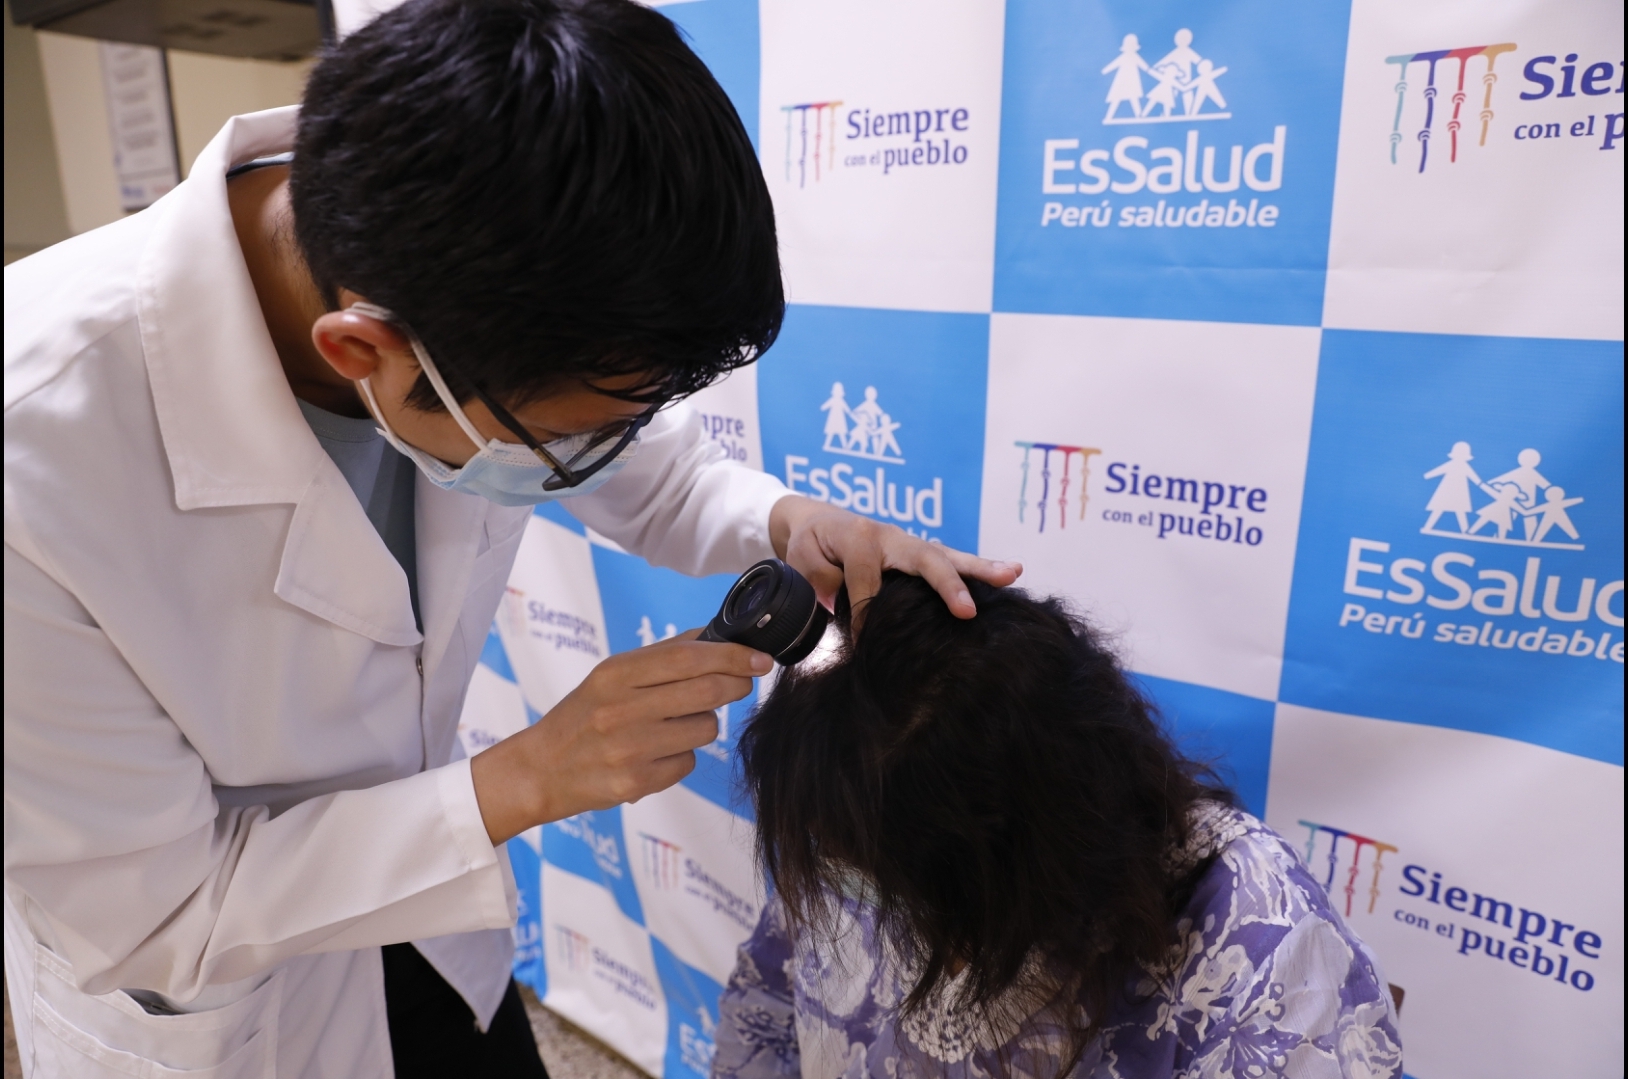 Essalud - EsSalud: 60% de mujeres reportan caída del cabello tras sufrir COVID-19